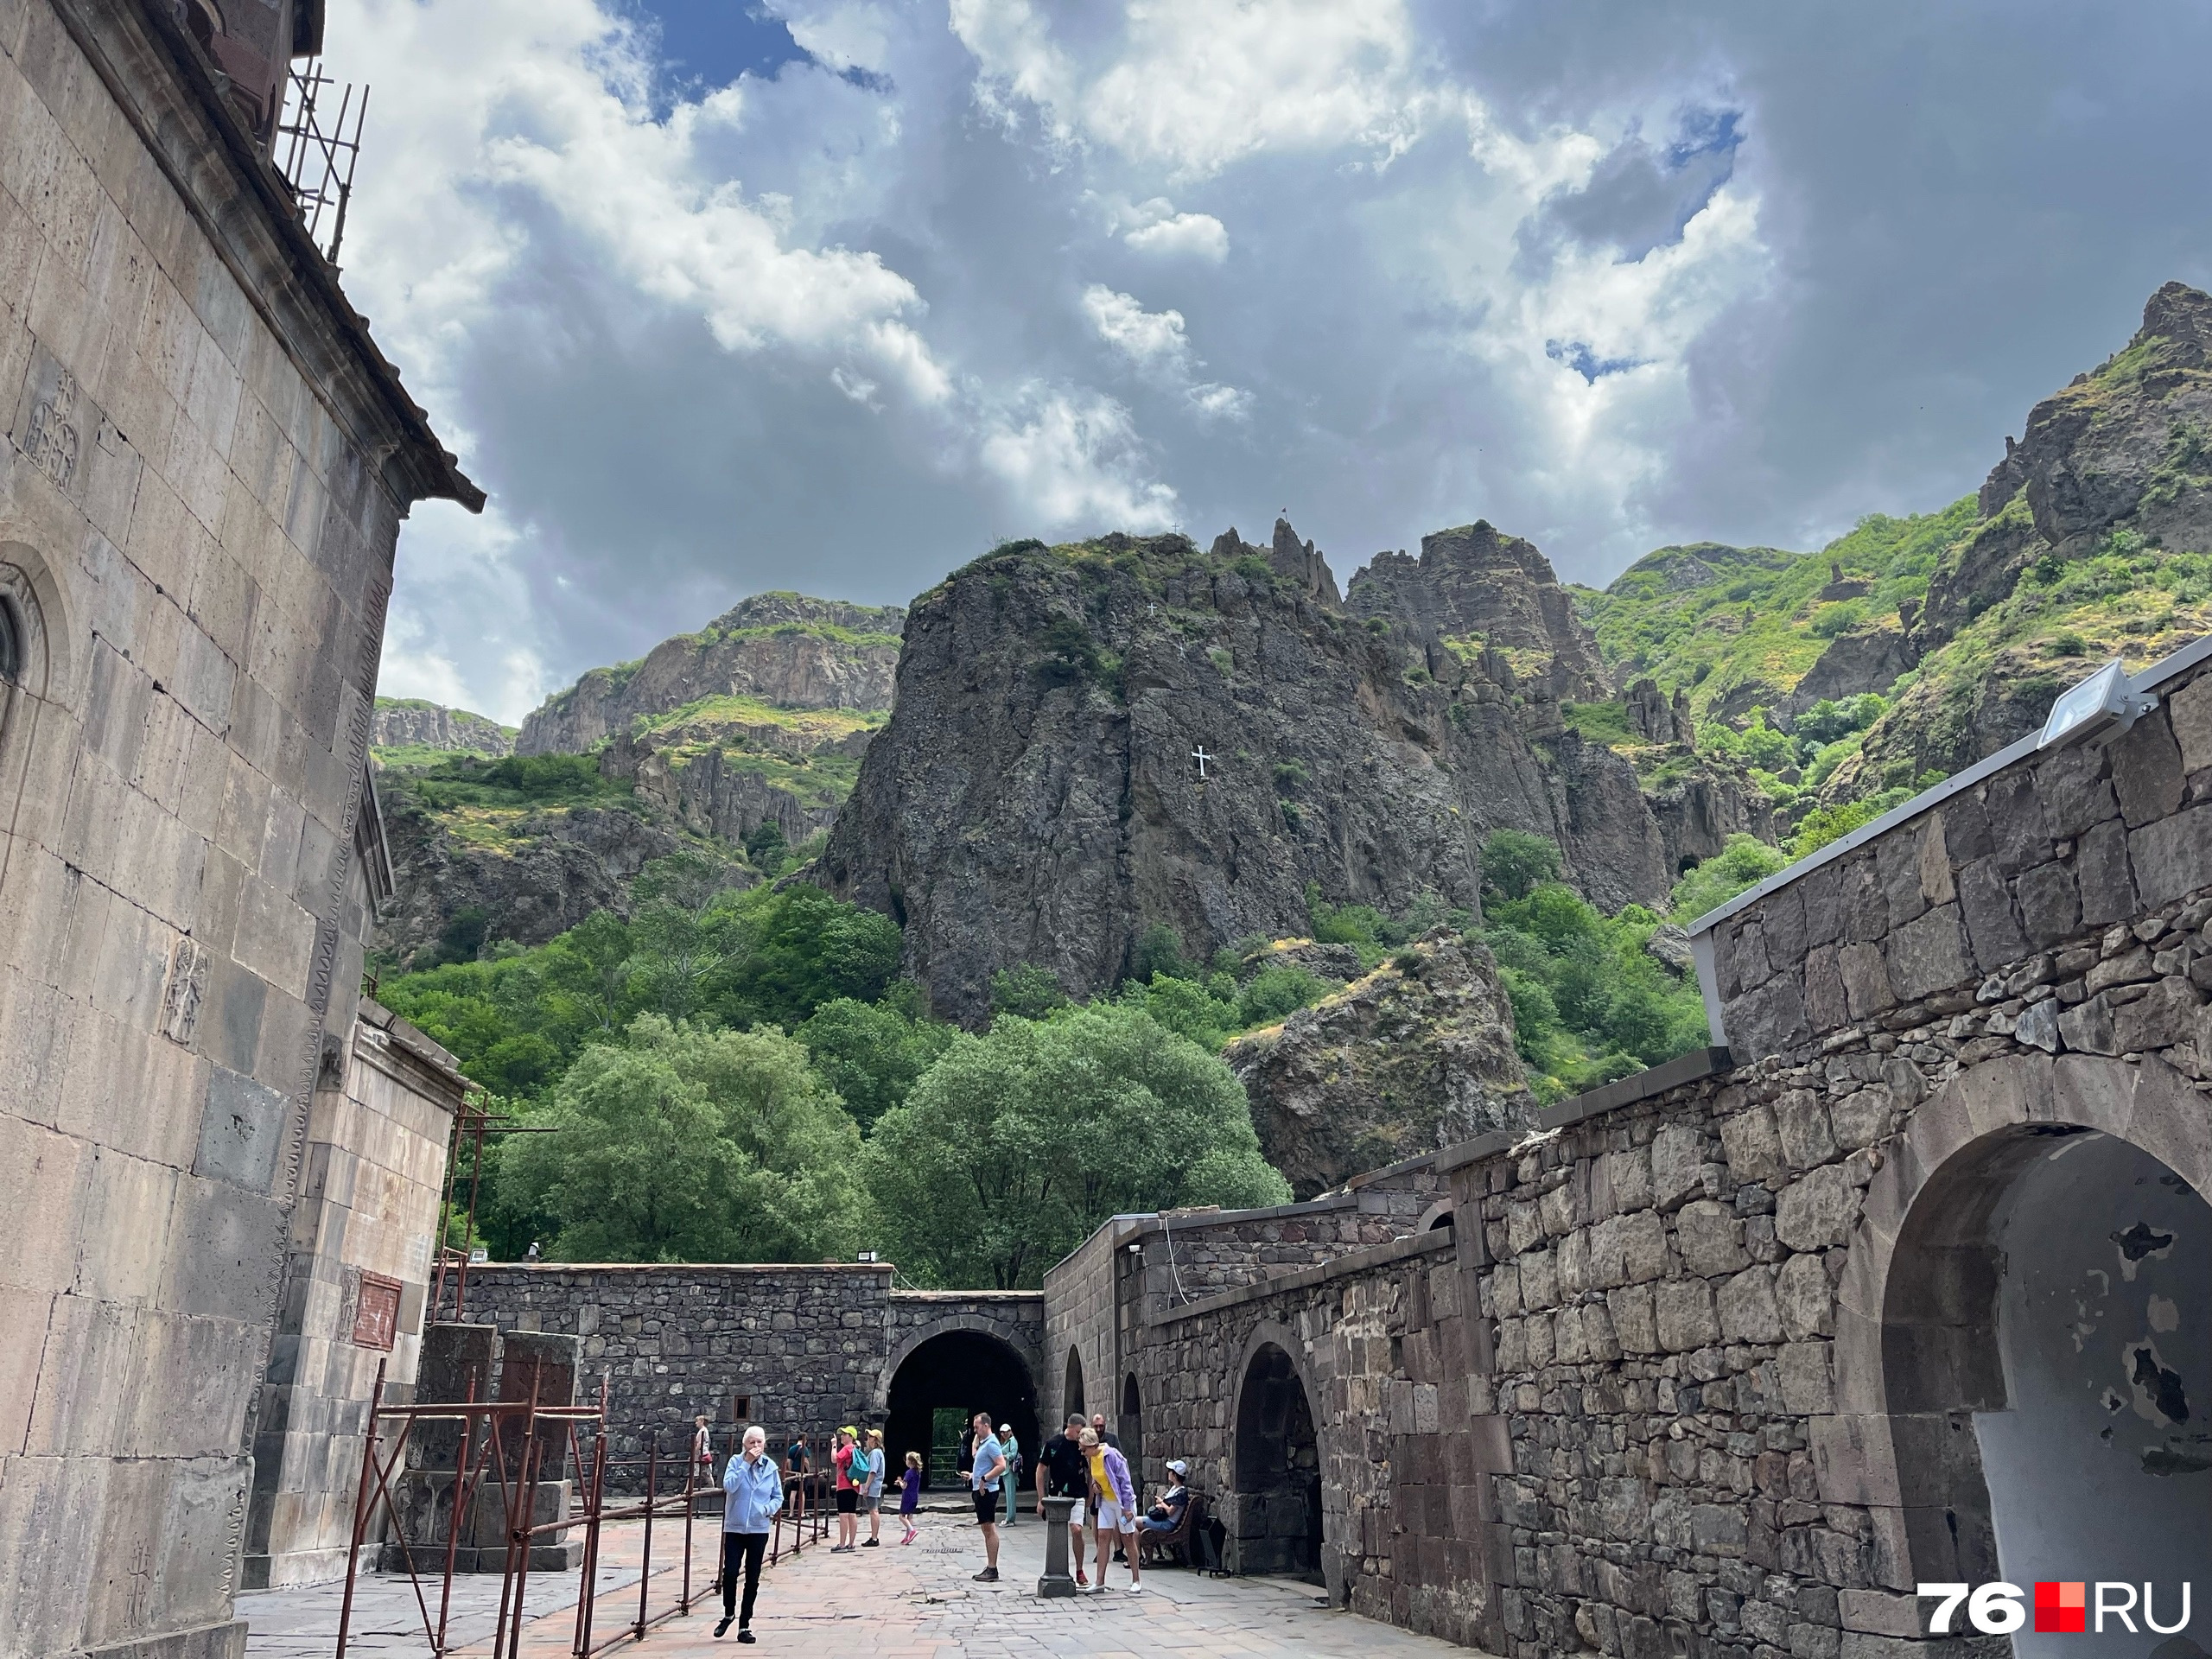 В верующей Армении чтят религию. Страна стала первым христианским государством в мире. На фото можно увидеть крест посреди скалы